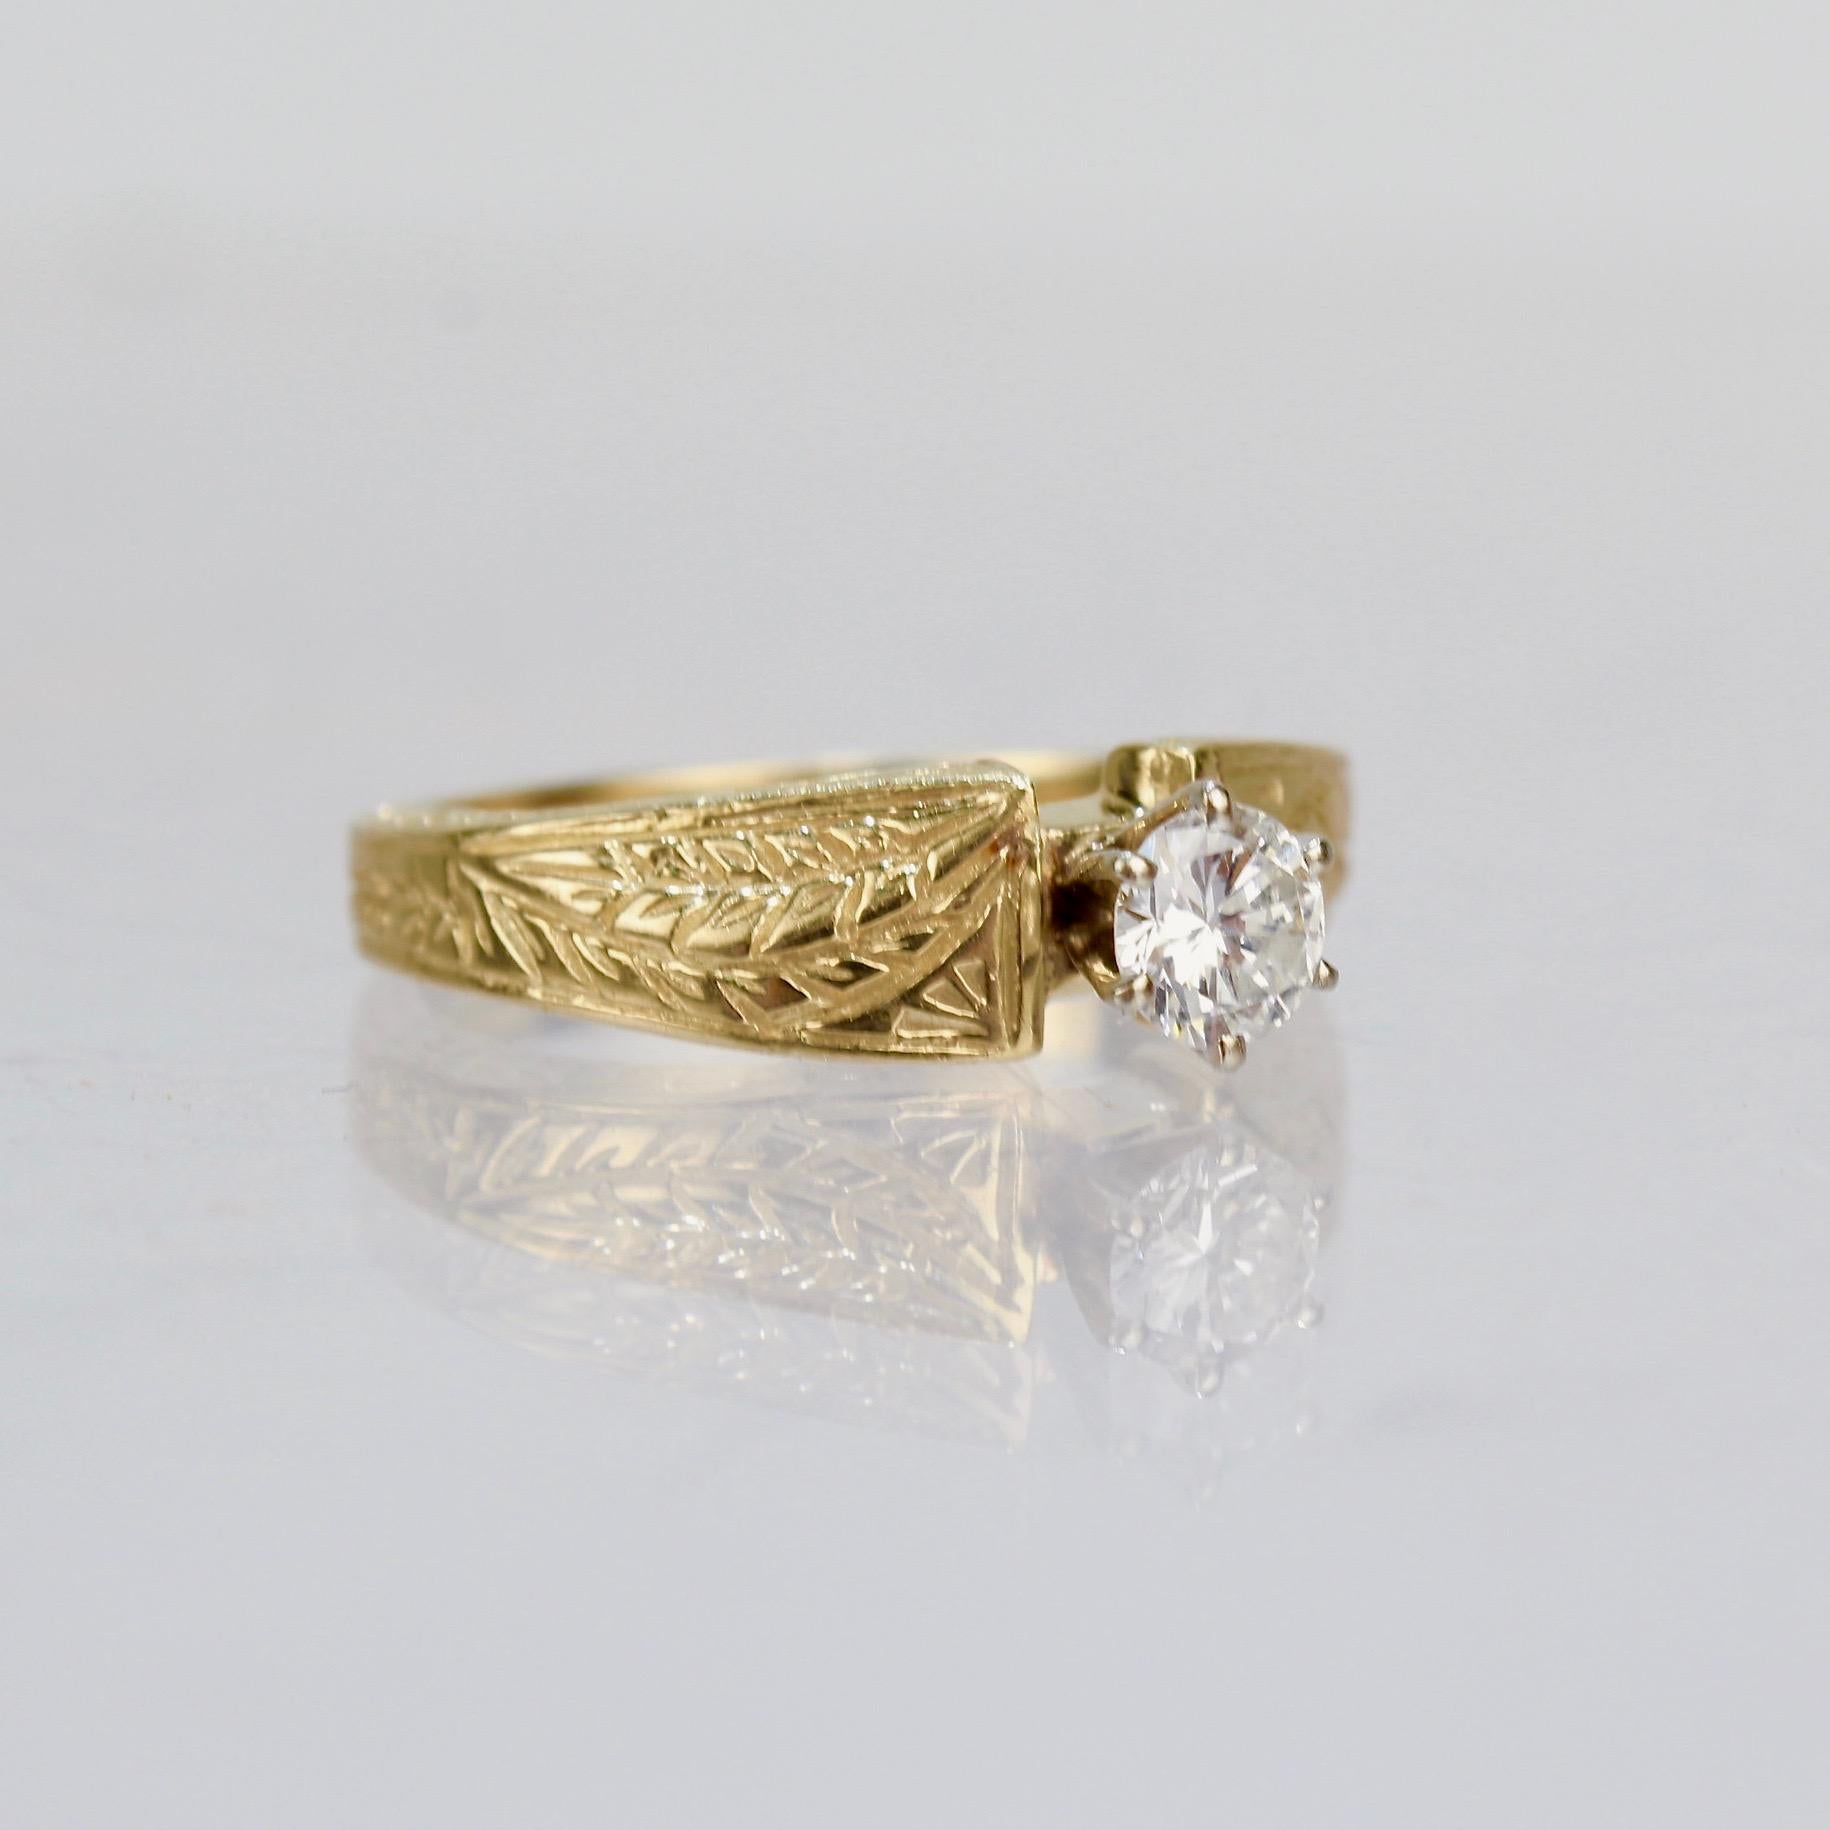 14 karat gold engagement ring